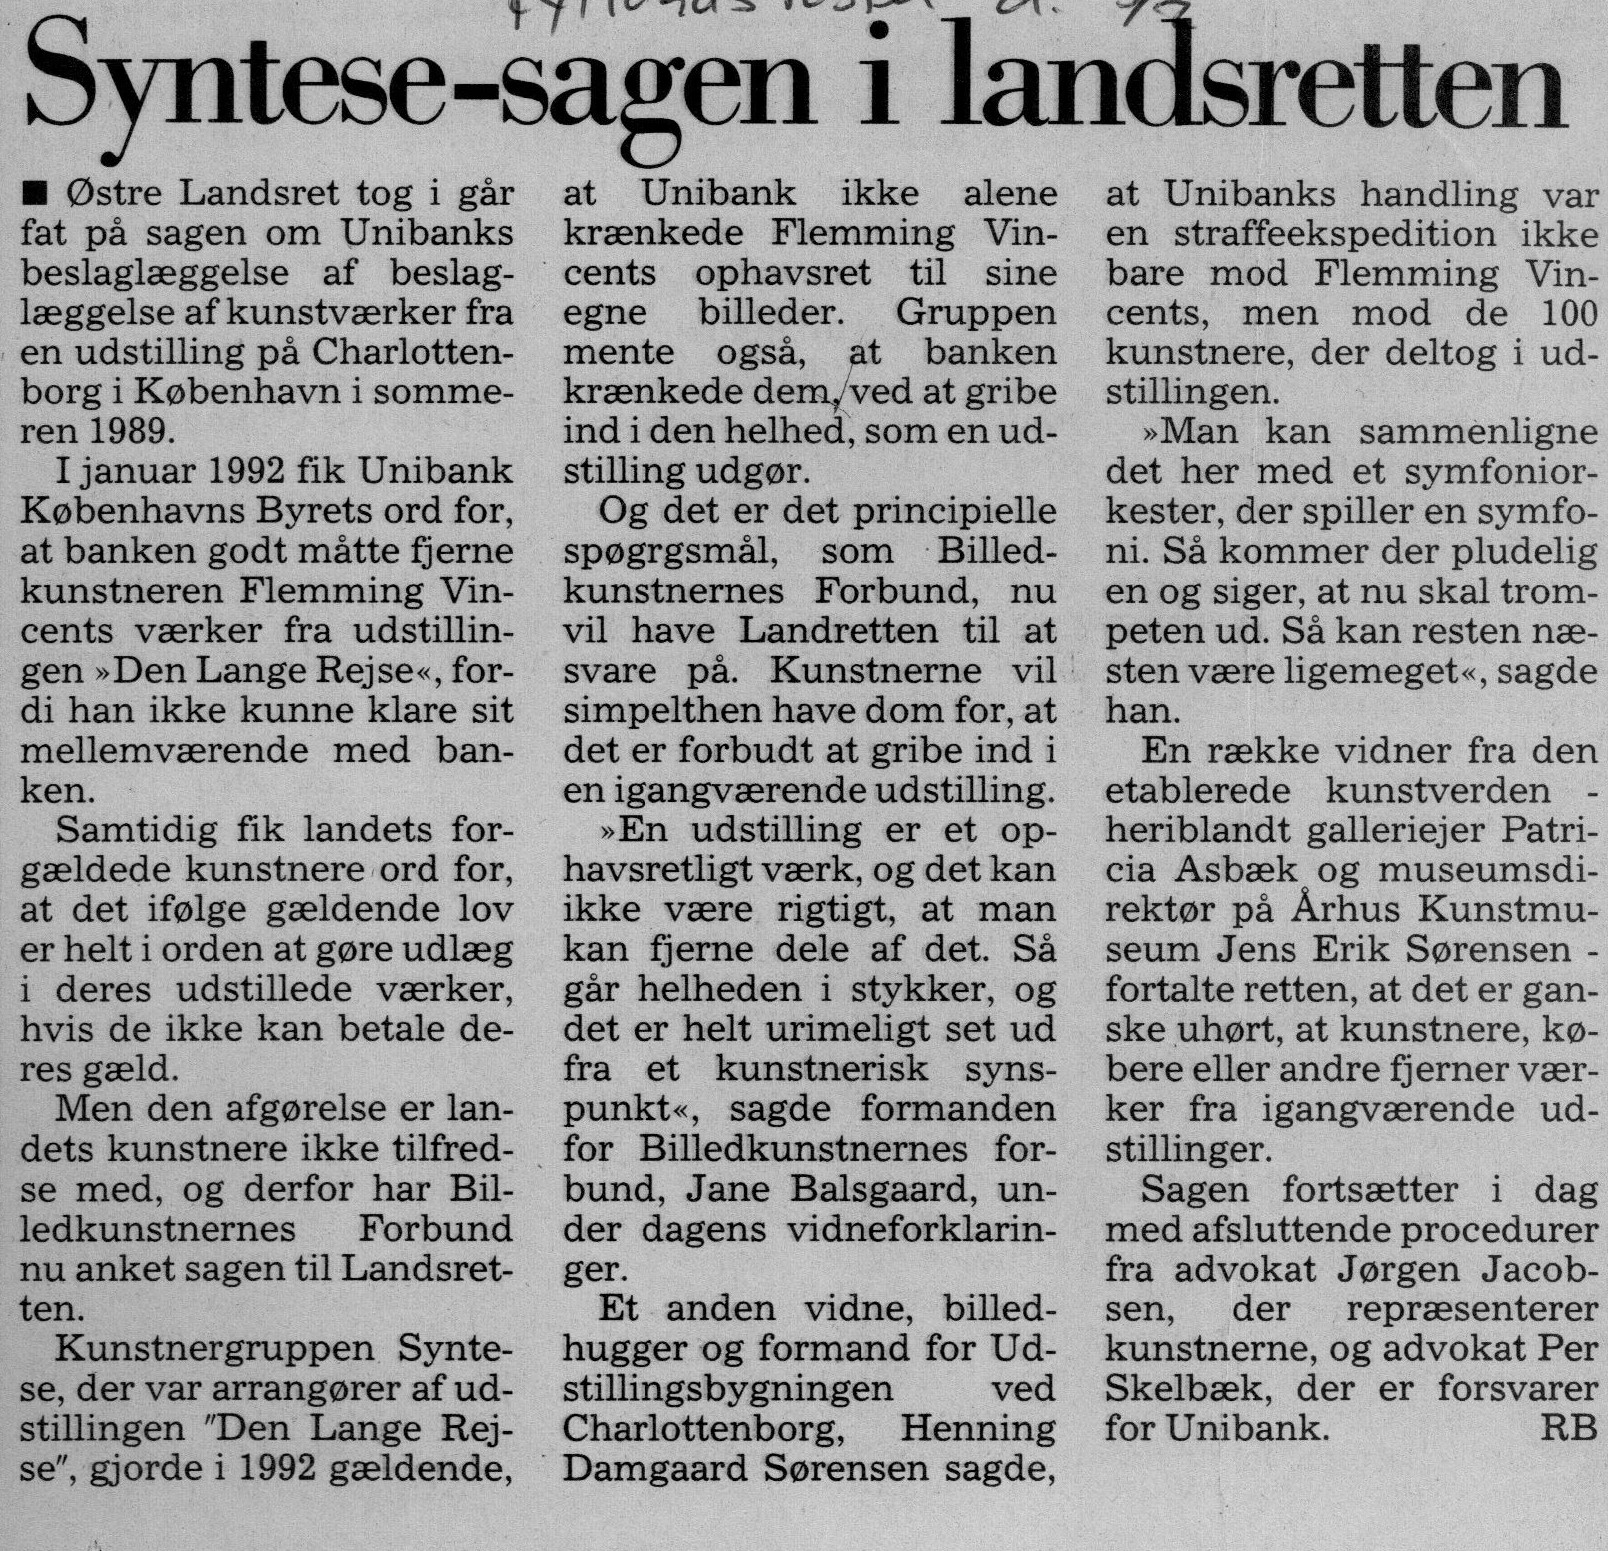 Syntese-sagen i Landsretten. Omtale ( Retssag. Den lange rejse, Charlottenborg, København 1989). RB. Jylllands Posten.